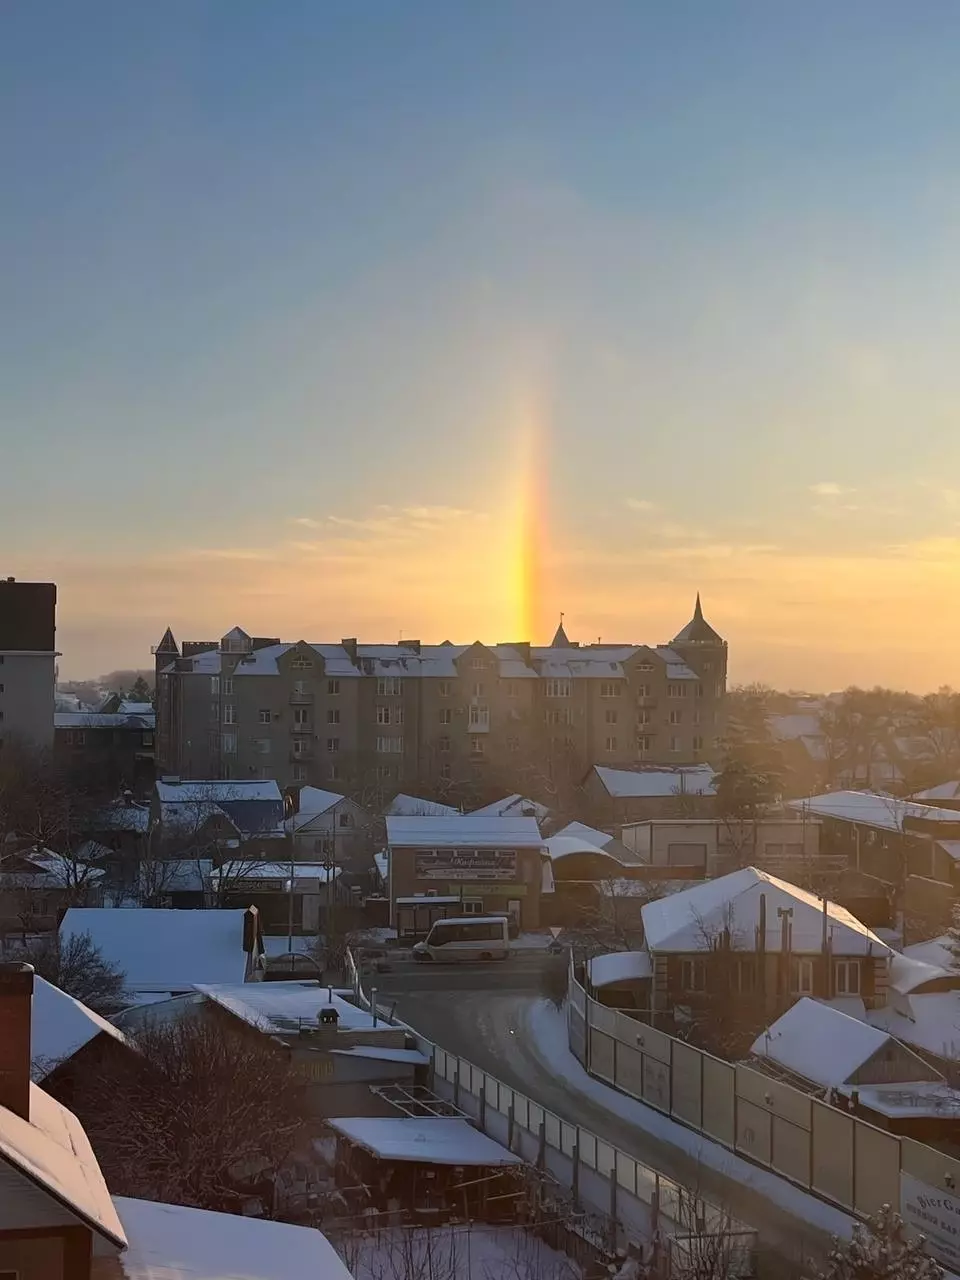 «Волшебное утро»: жителей Ставрополя восхитили три солнца в утреннем небе7